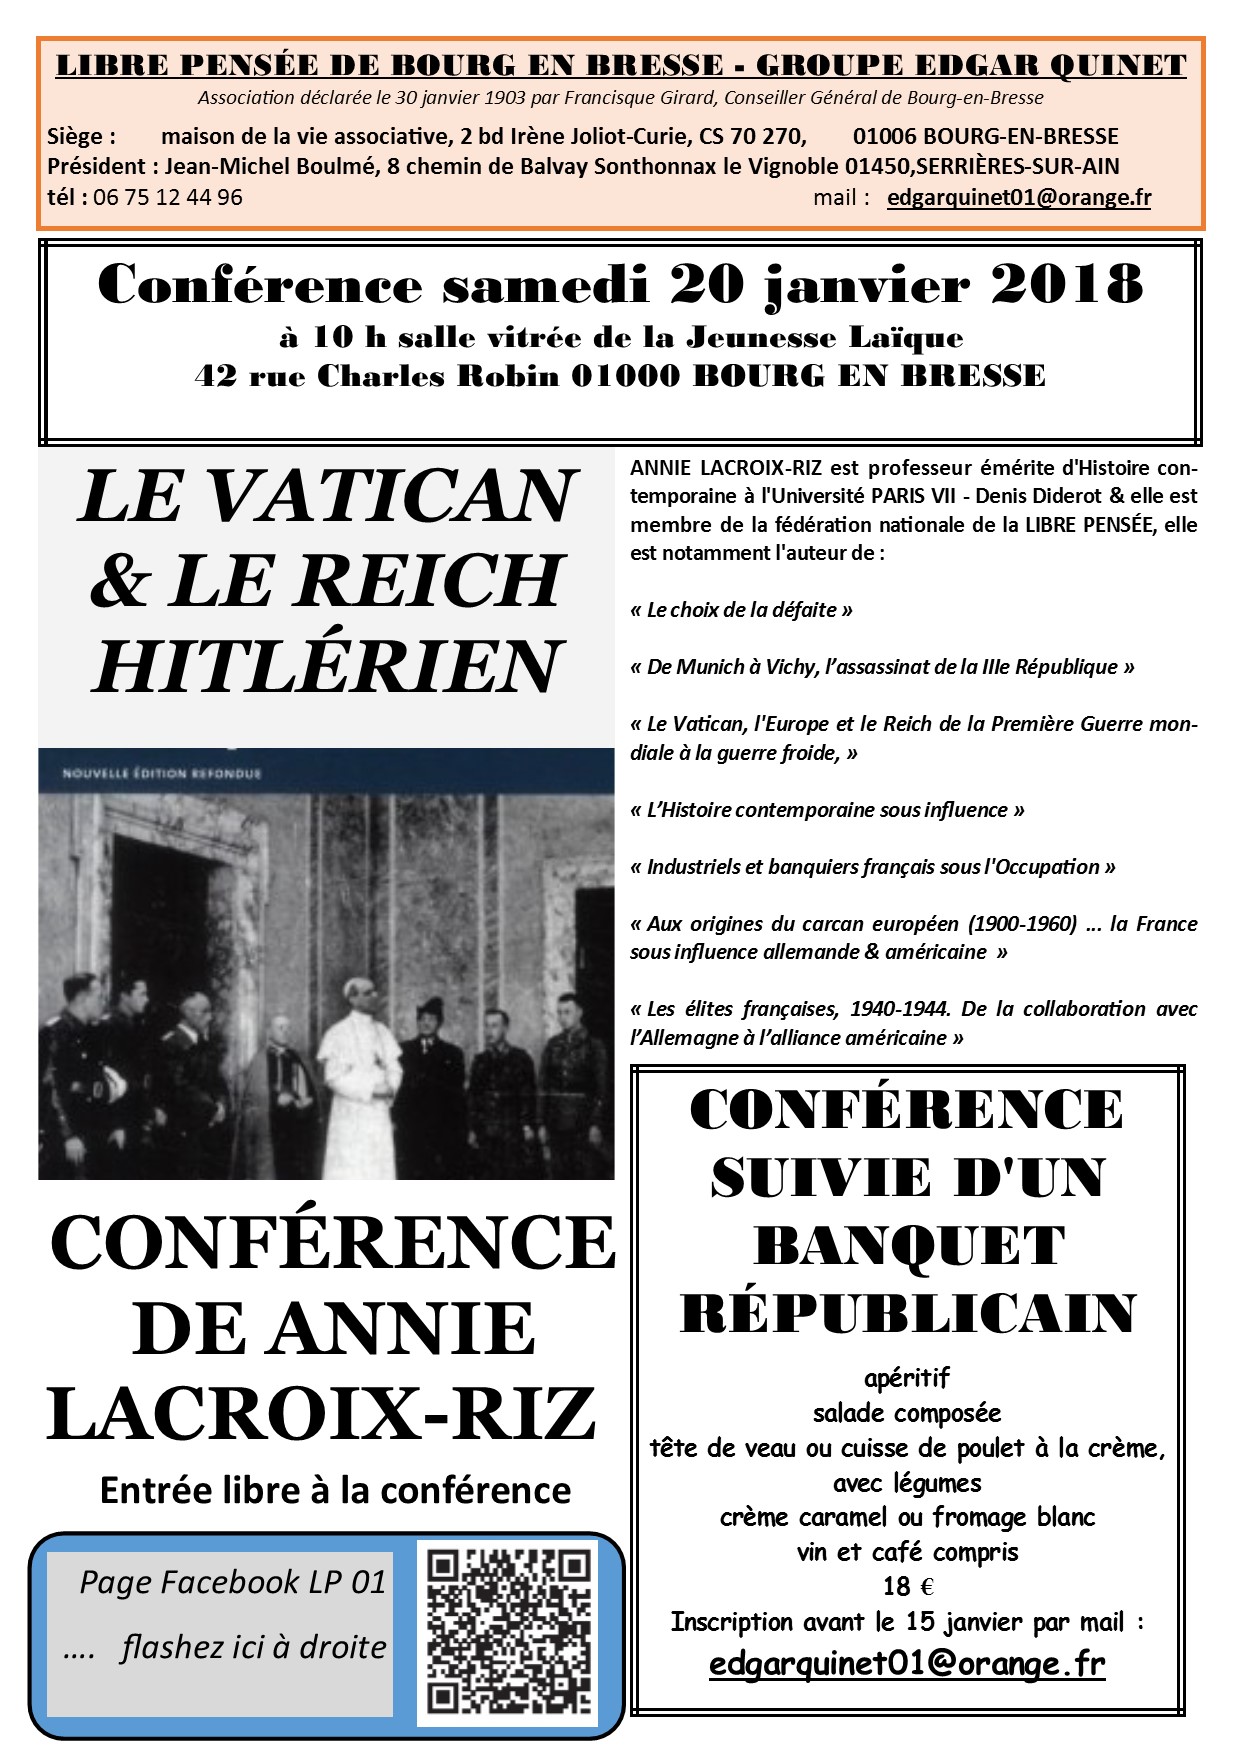 Le Vatican et le Reich hitlérien – conférence d’A Lacroix-Riz [20/01 – Bourg en Bresse]